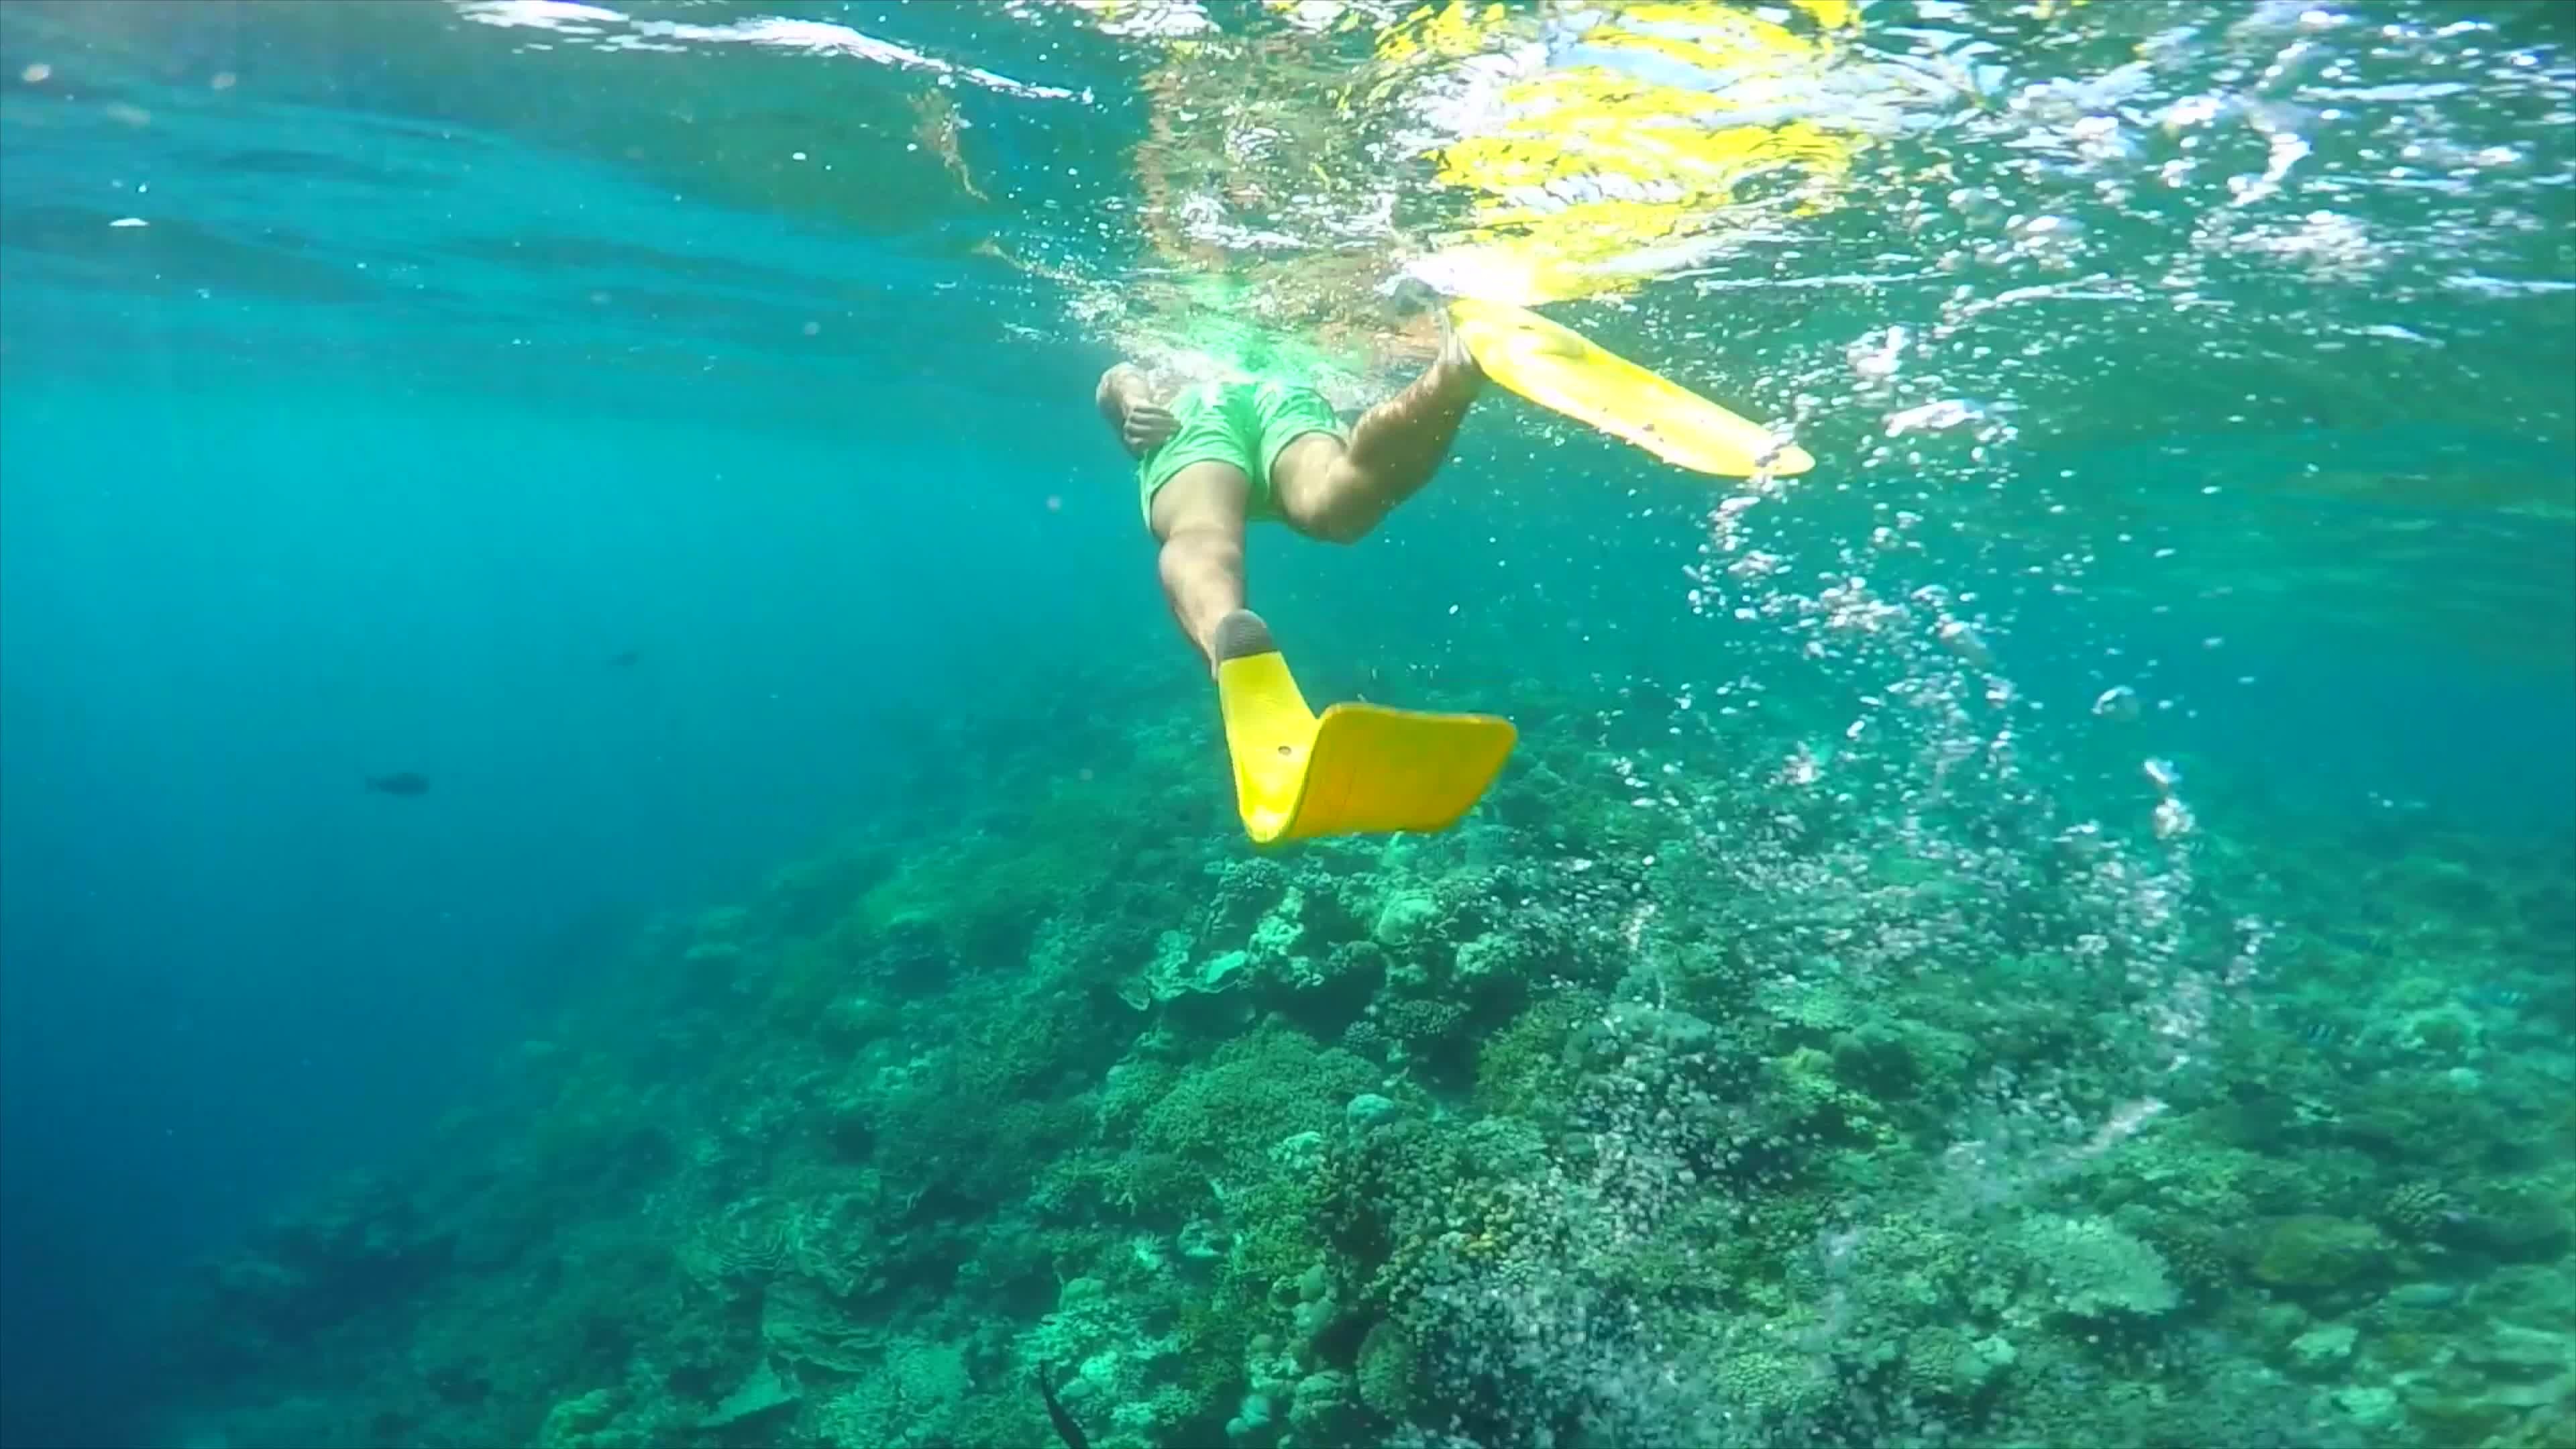 Snorkeling: Snorkel gear, Fins, Underwater swimming, Diving, Swimwear. 3840x2160 4K Wallpaper.